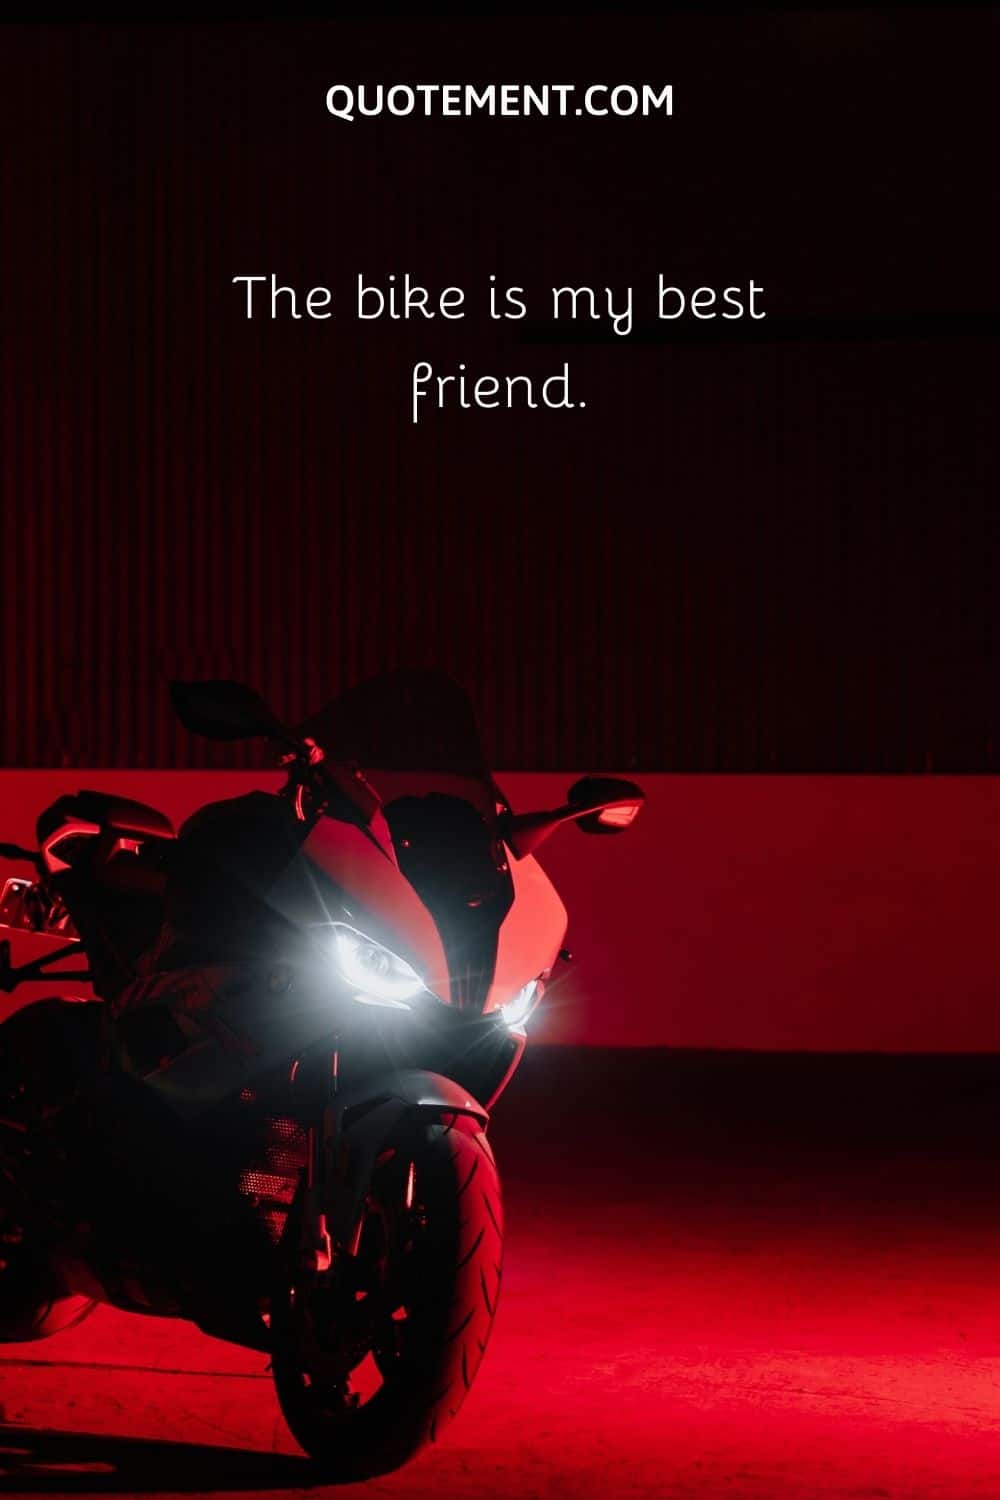 The bike is my best friend.